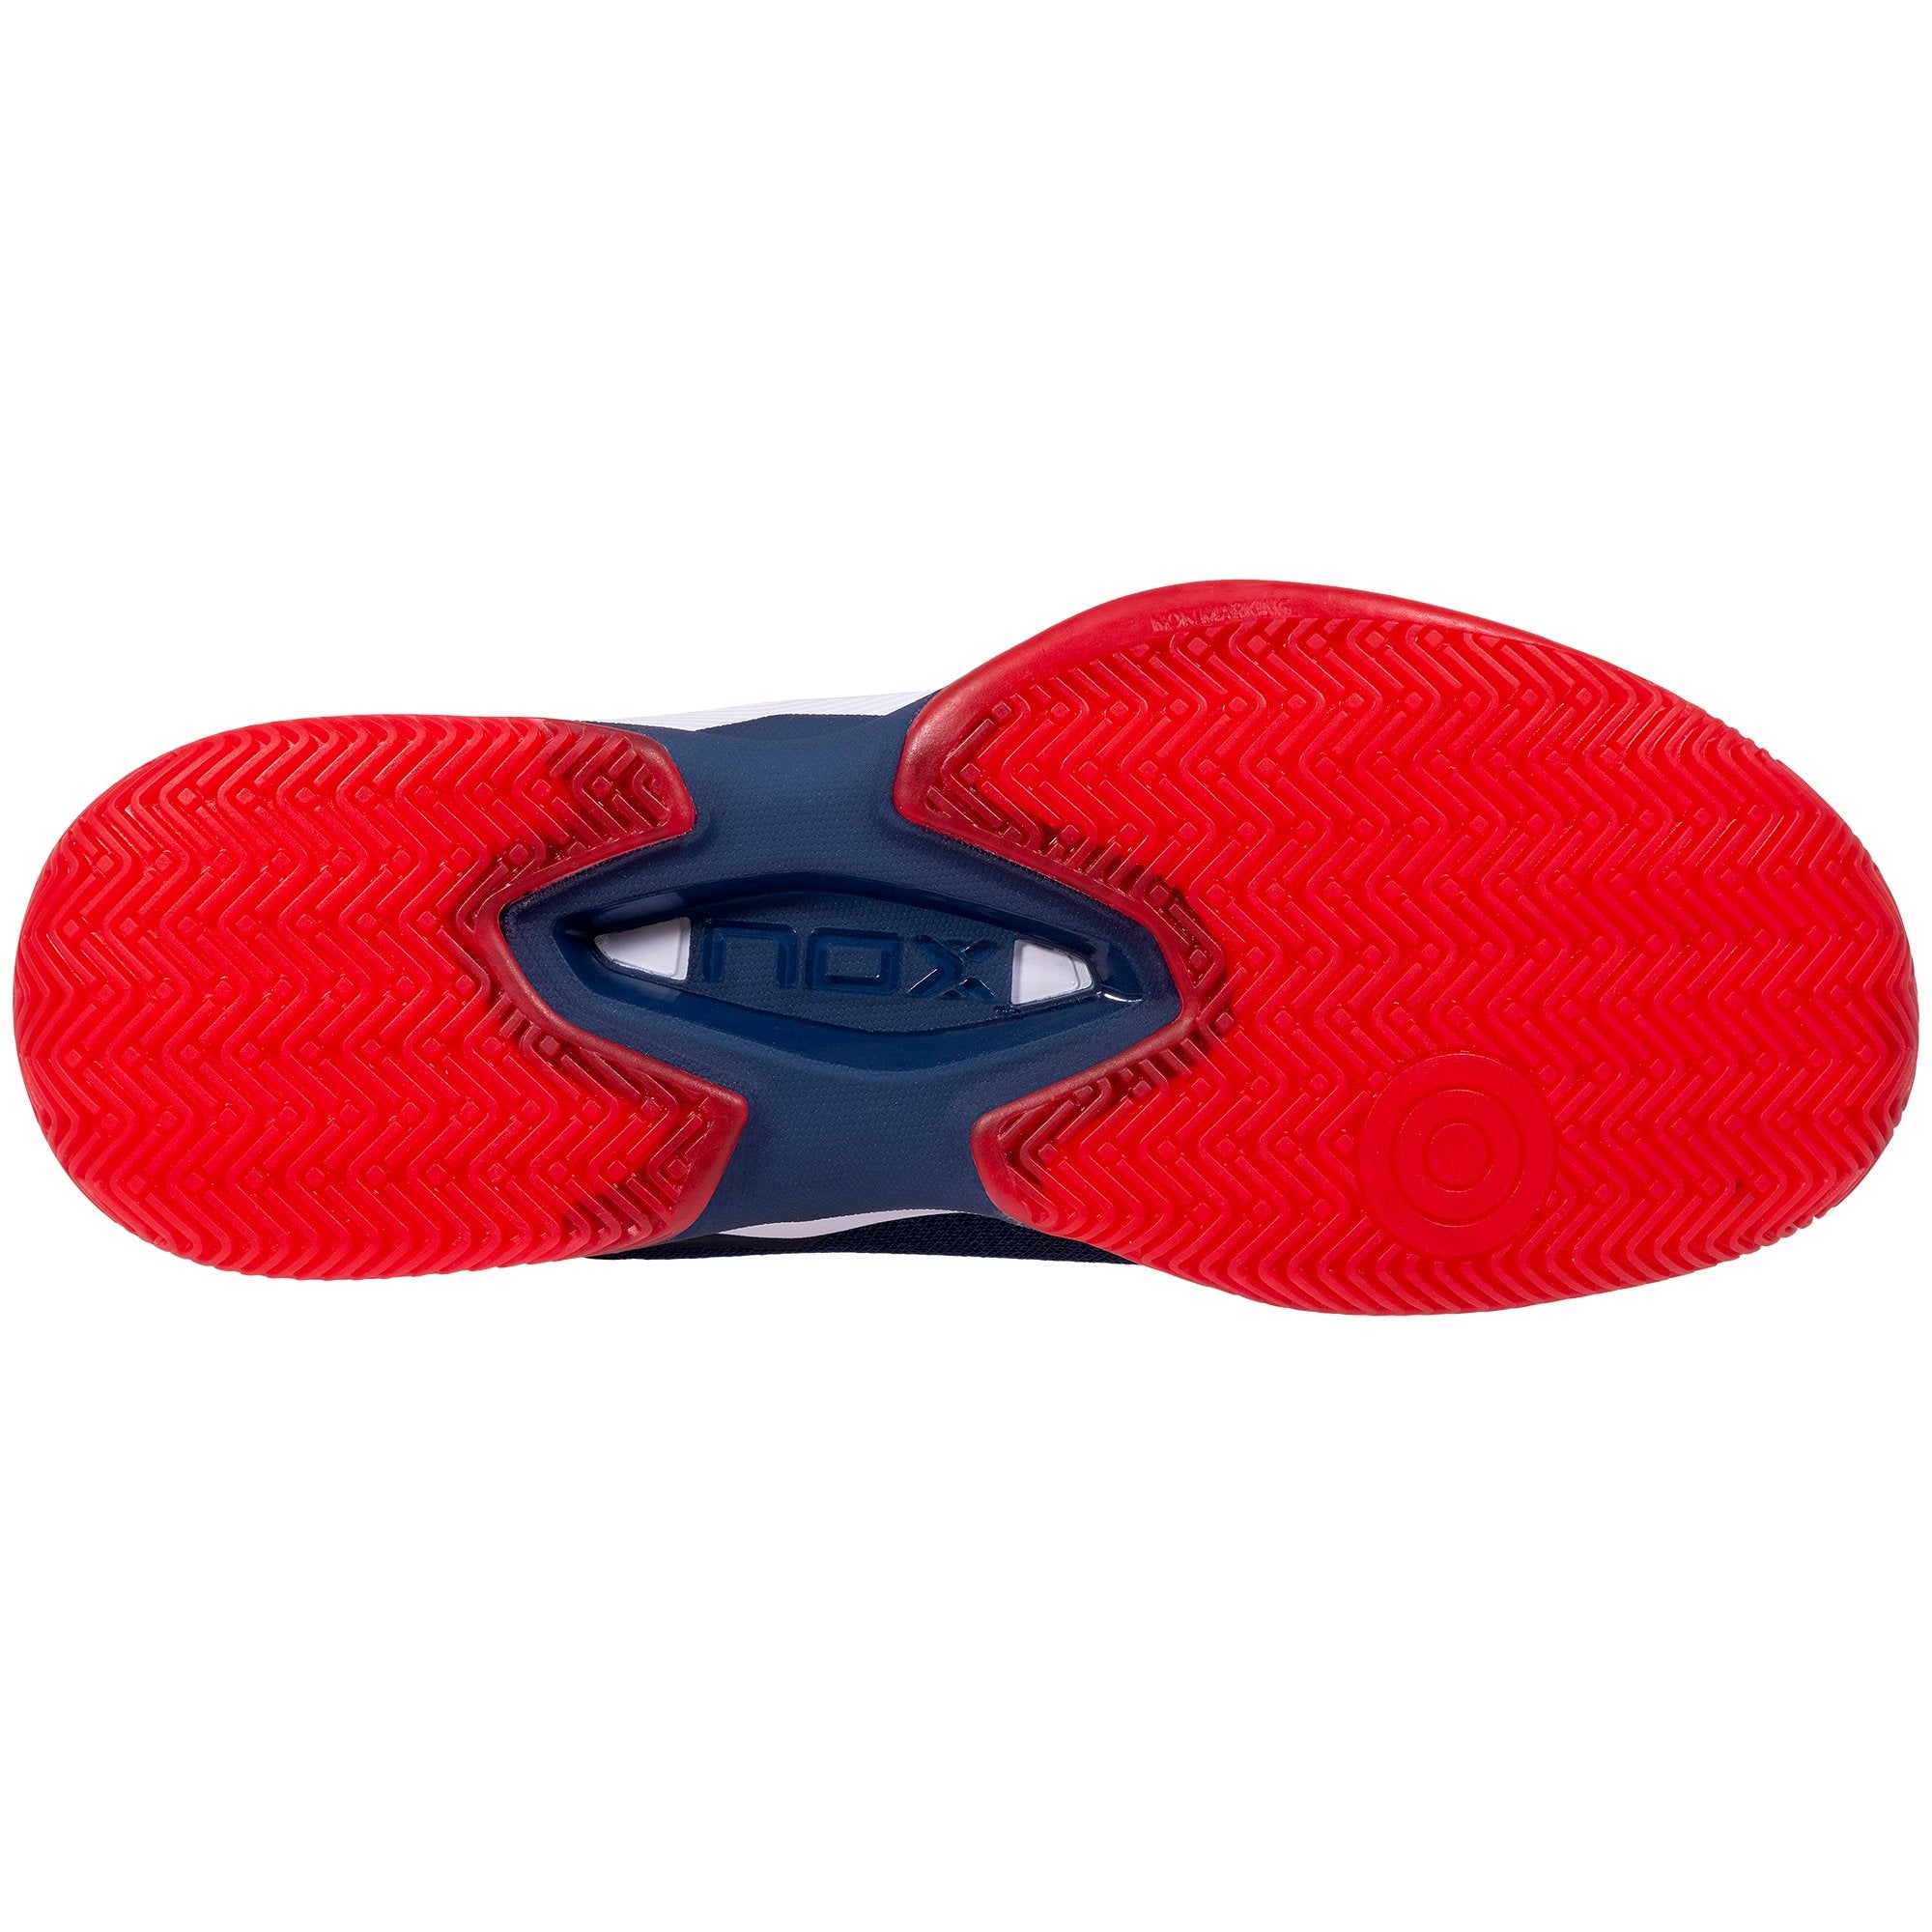 Zapatillas de Pádel Nox ML10 HEXA Azul marino/Rojo - NOX